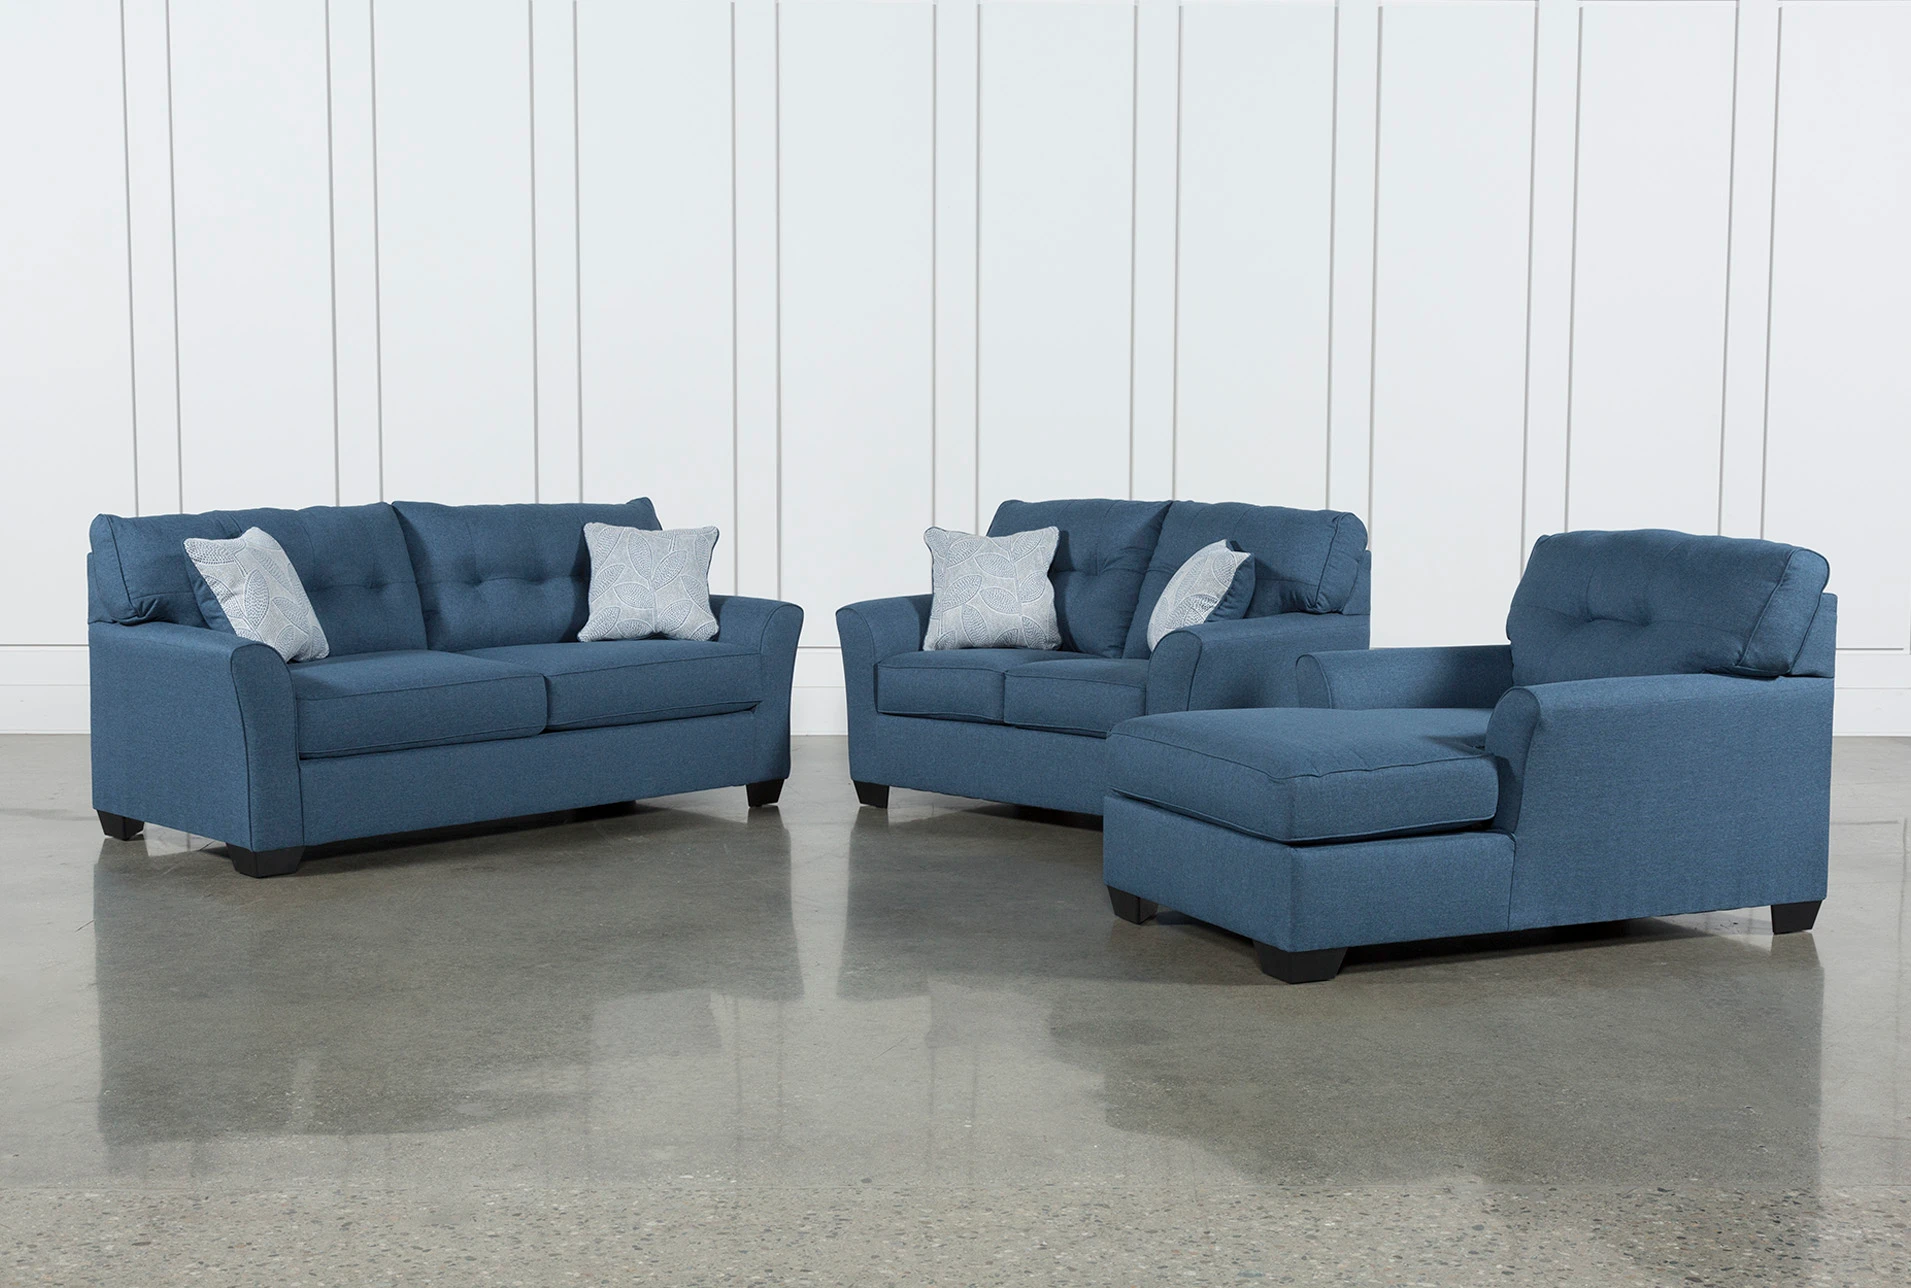 Jacoby Denim 3 Piece Living Room Set, Blue Denim Sleeper Sofa